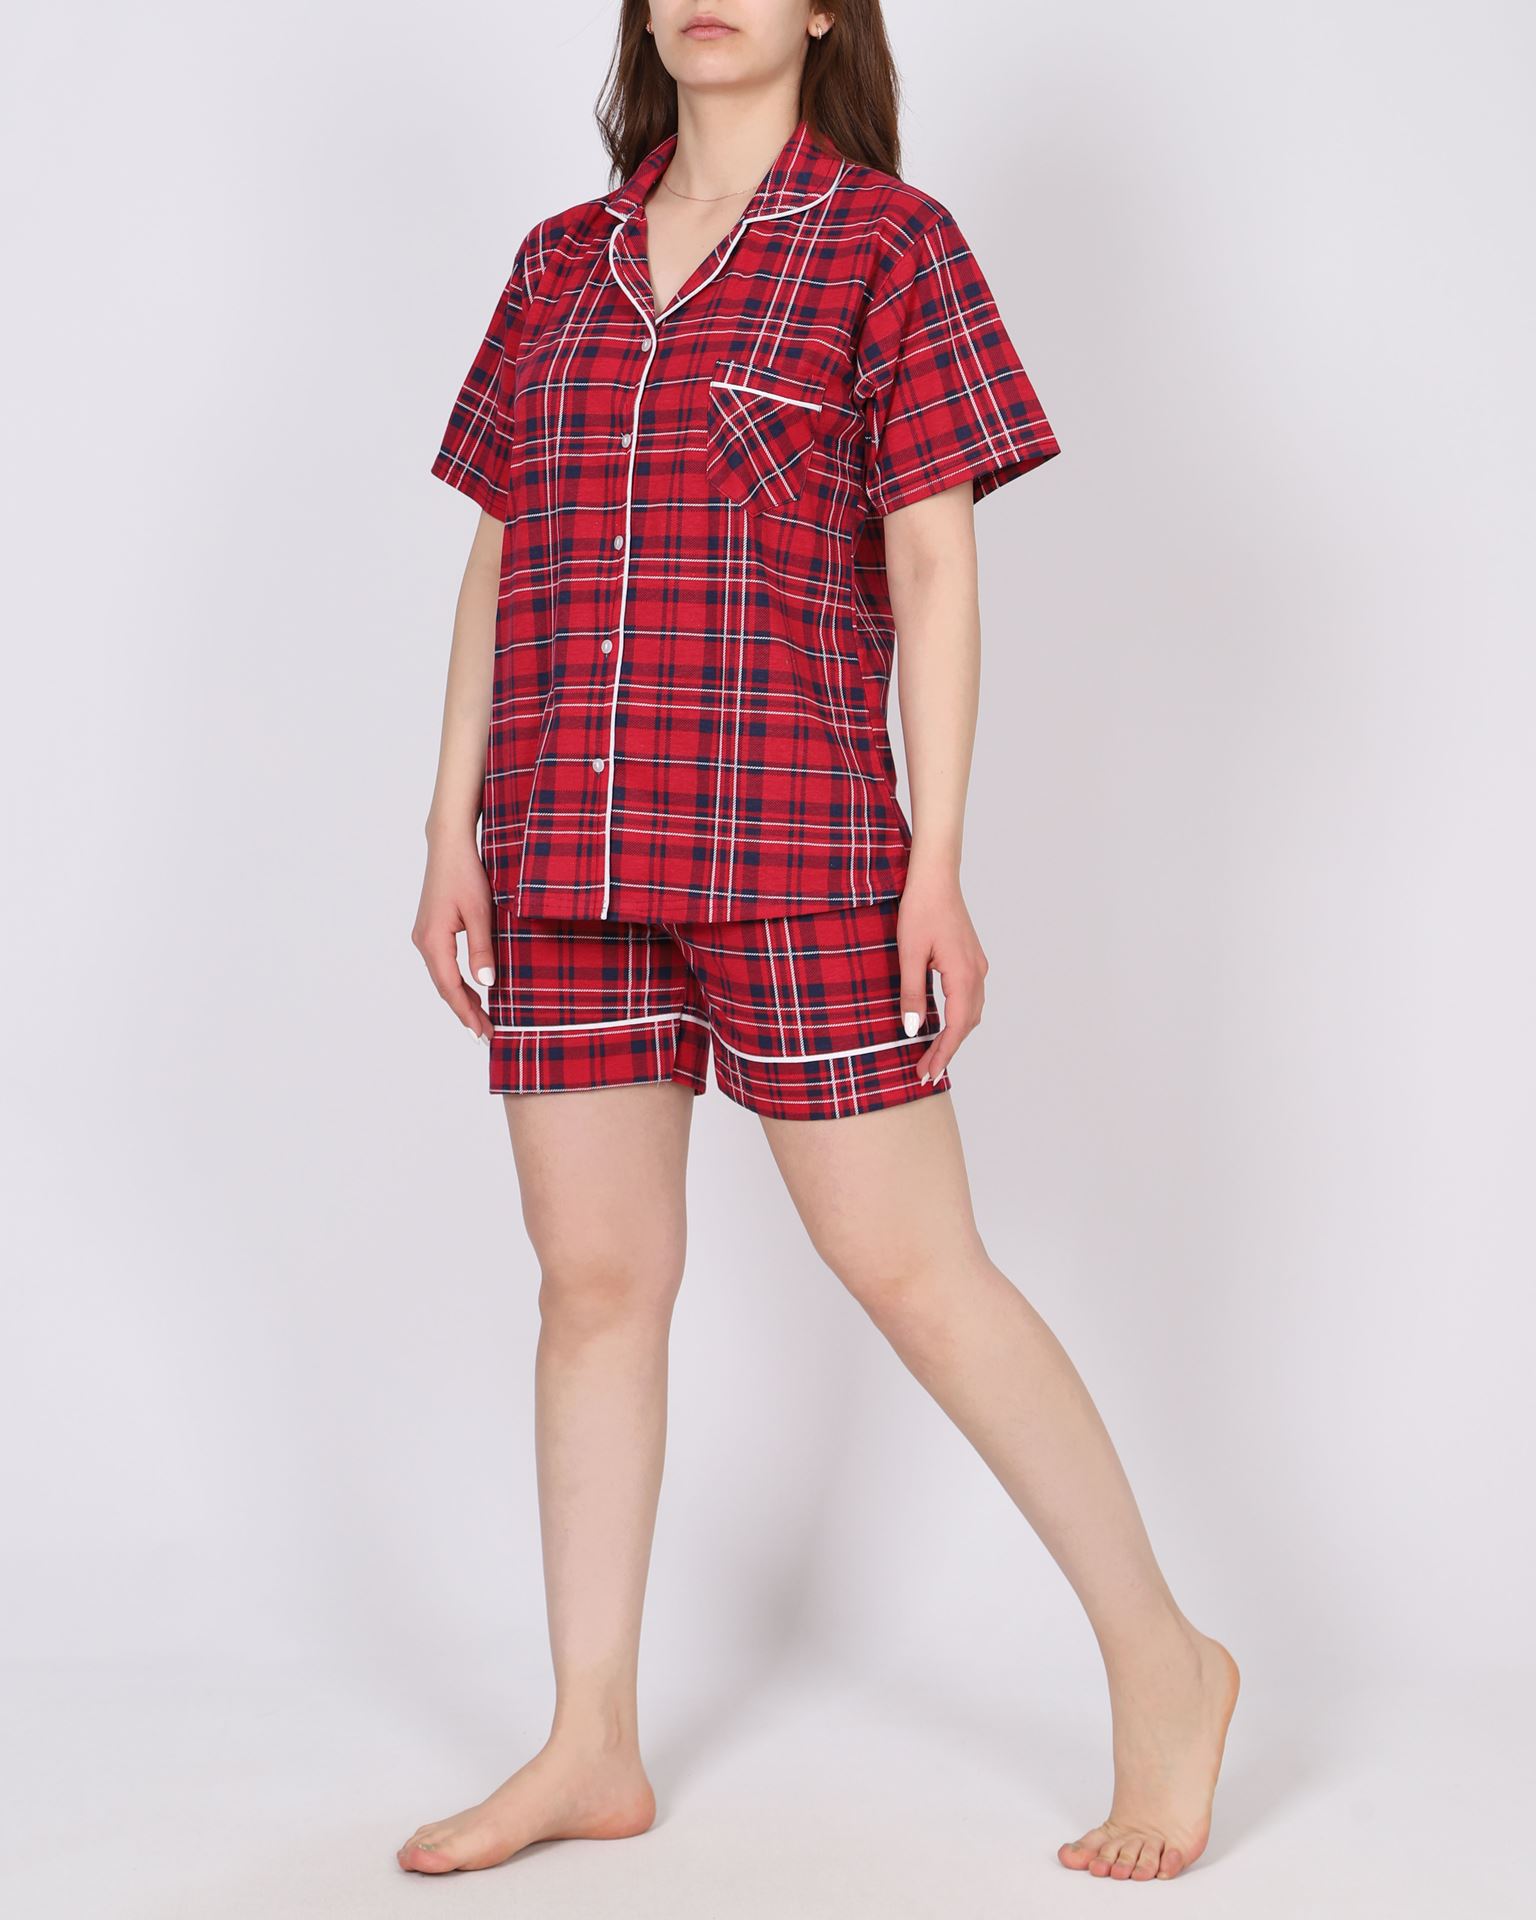 Kırmızı Desenli Şortlu Pijama Takımı PJM1628